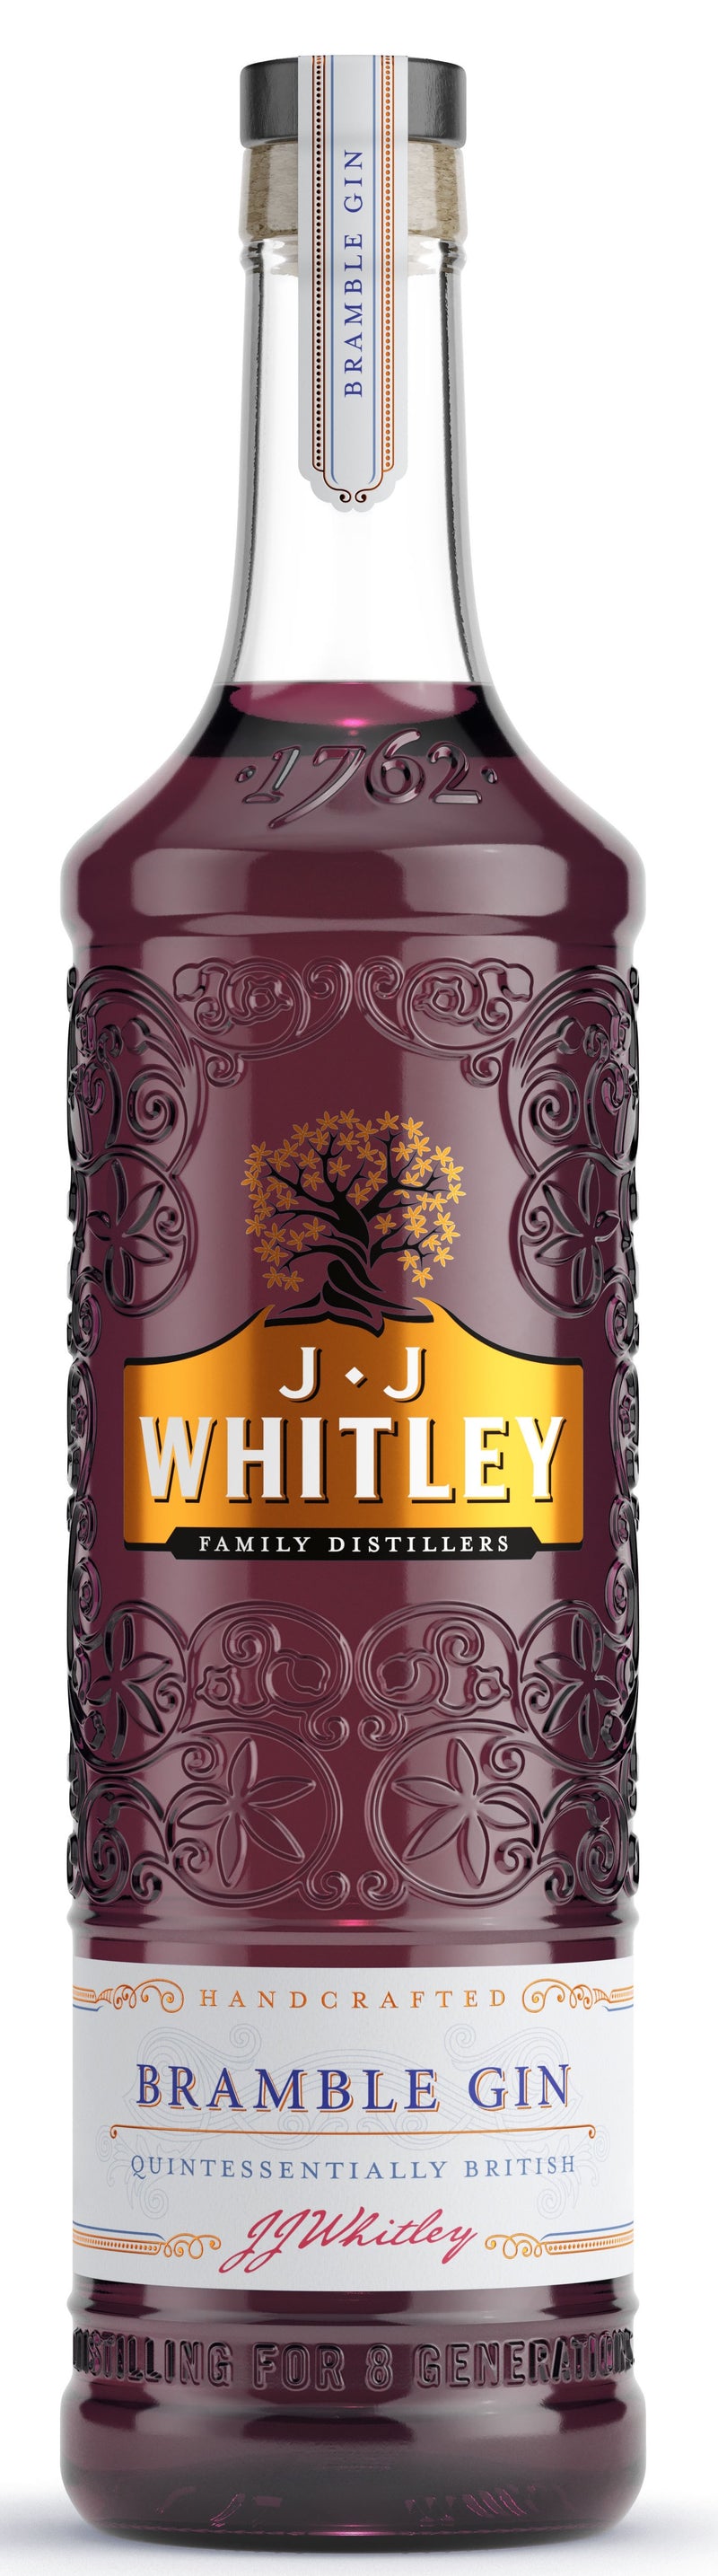 J.J. Whitley Bramble Gin 70cl